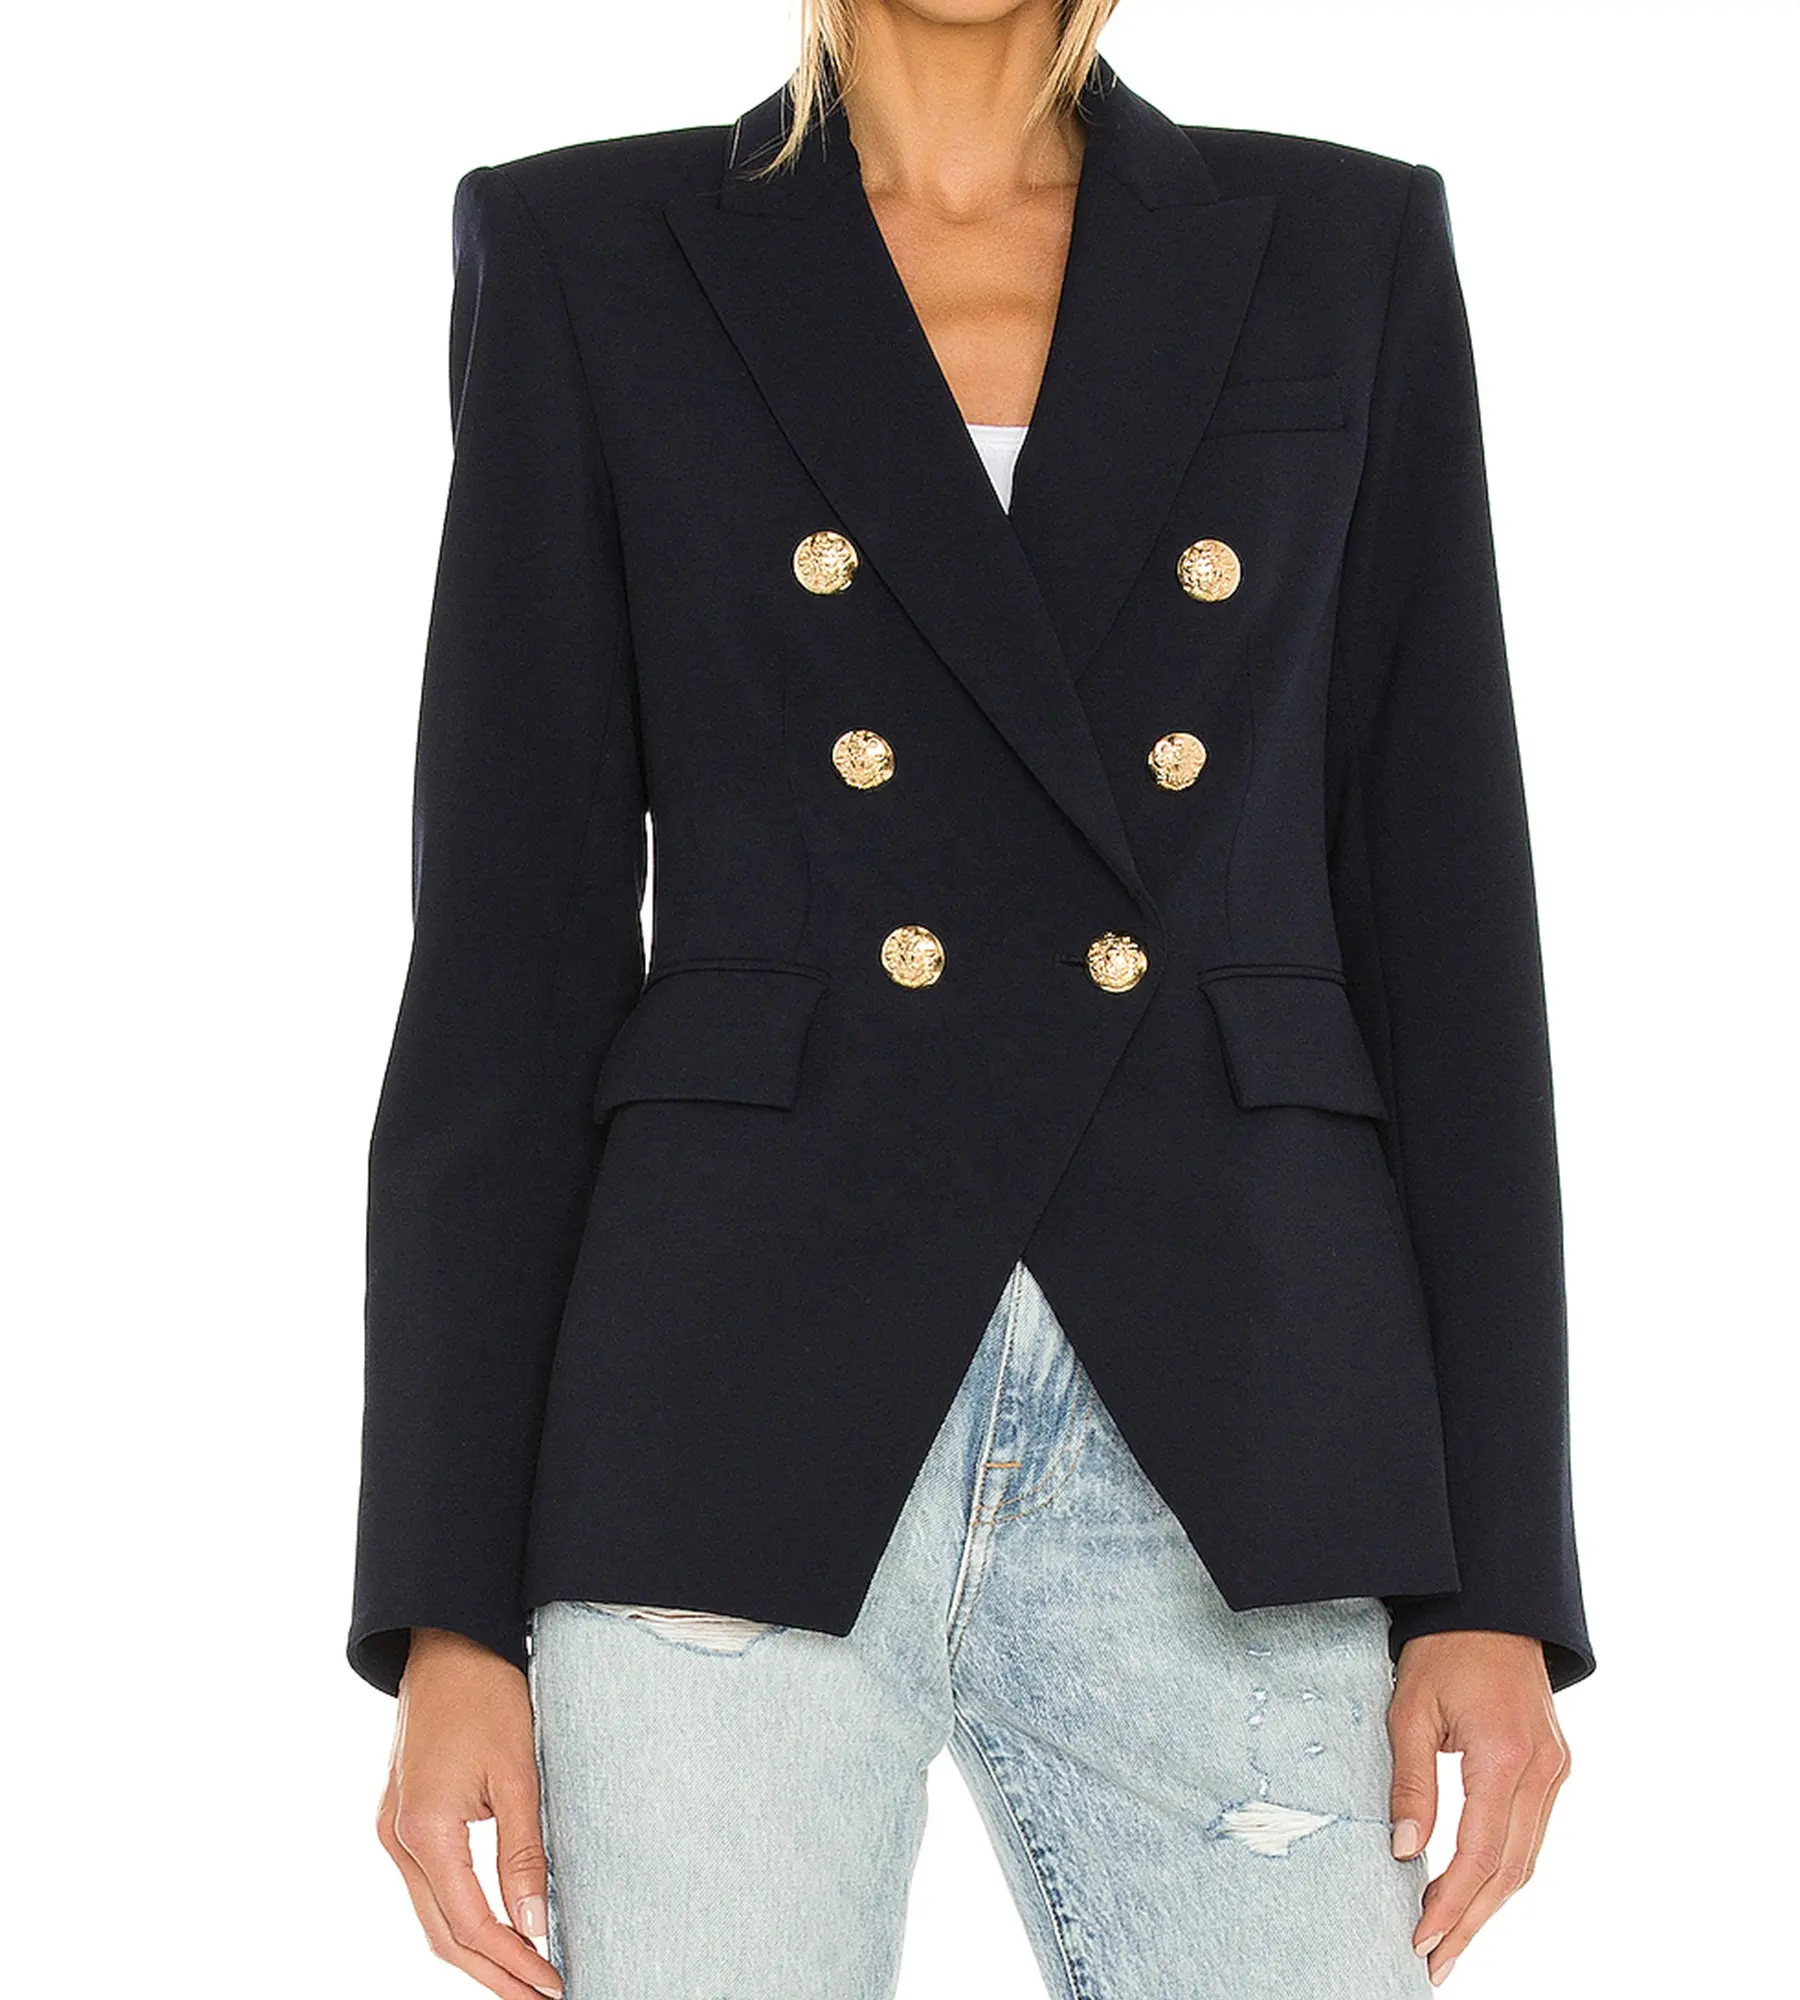 Yeni varış son tasarım kadın blazers casual takım elbise kumaşı arka havalandırma kruvaze düğme ceket bayan için